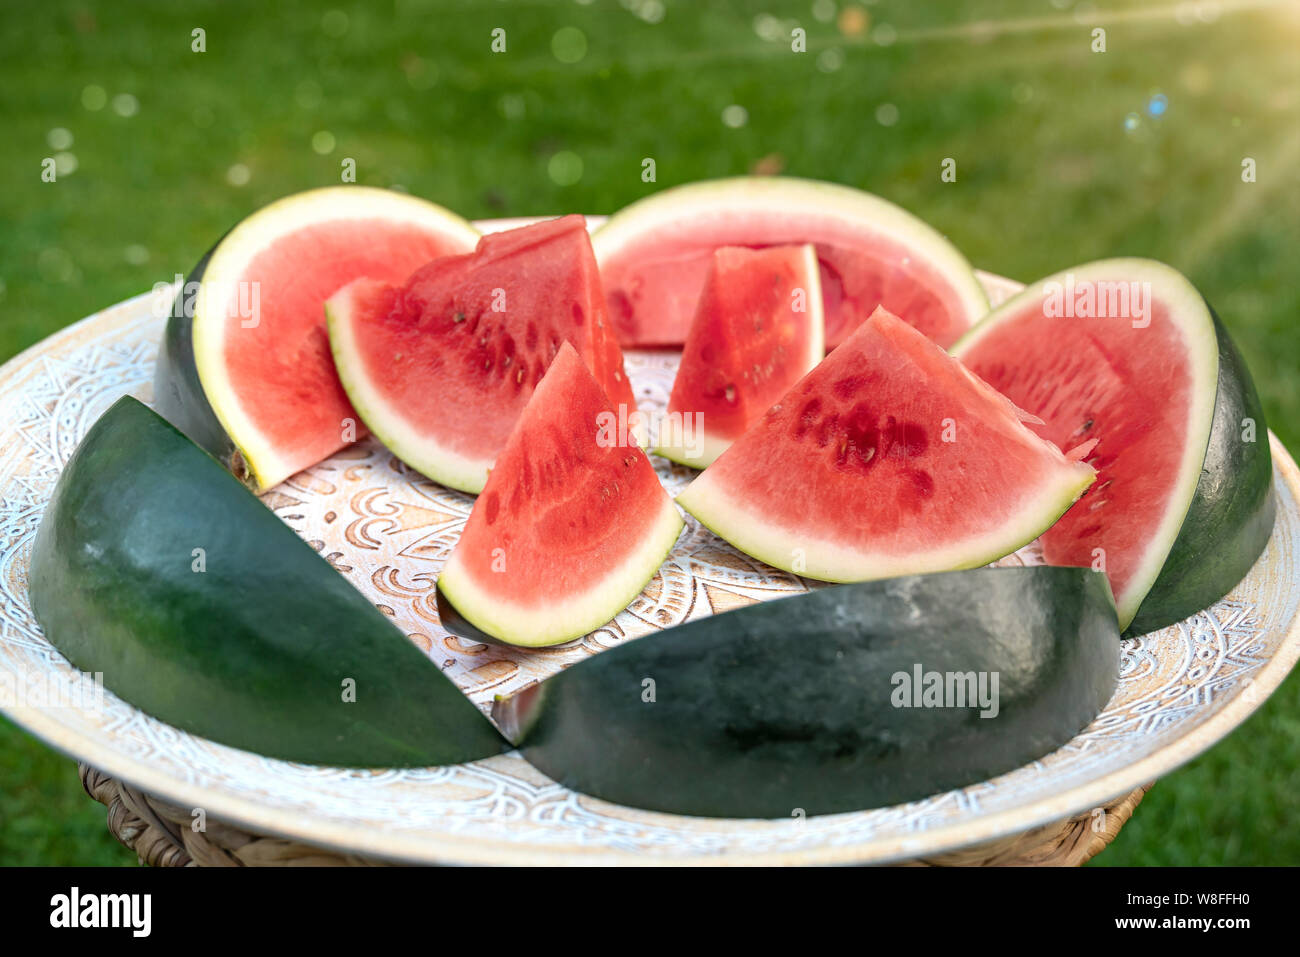 Les Melons pièces qui ressemblent à des navires se trouvent sur un plateau en bois africains les melons sont debout sur l'été vert prairie avec soleil. Banque D'Images